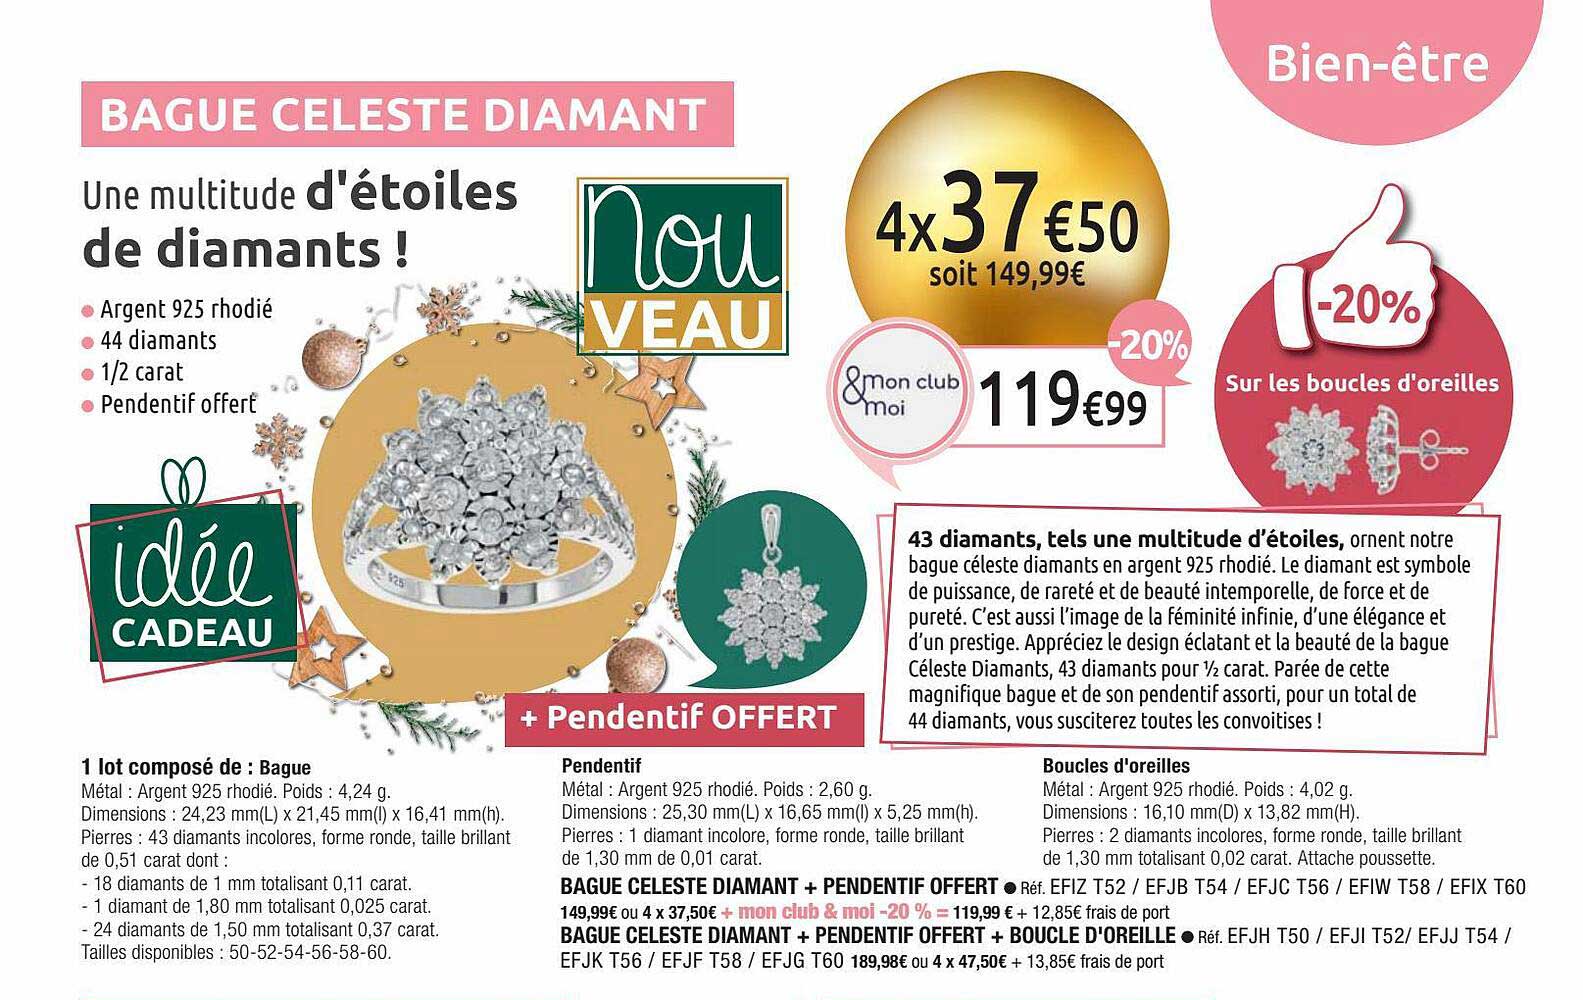 M6 Boutique Bague Celeste Diamant